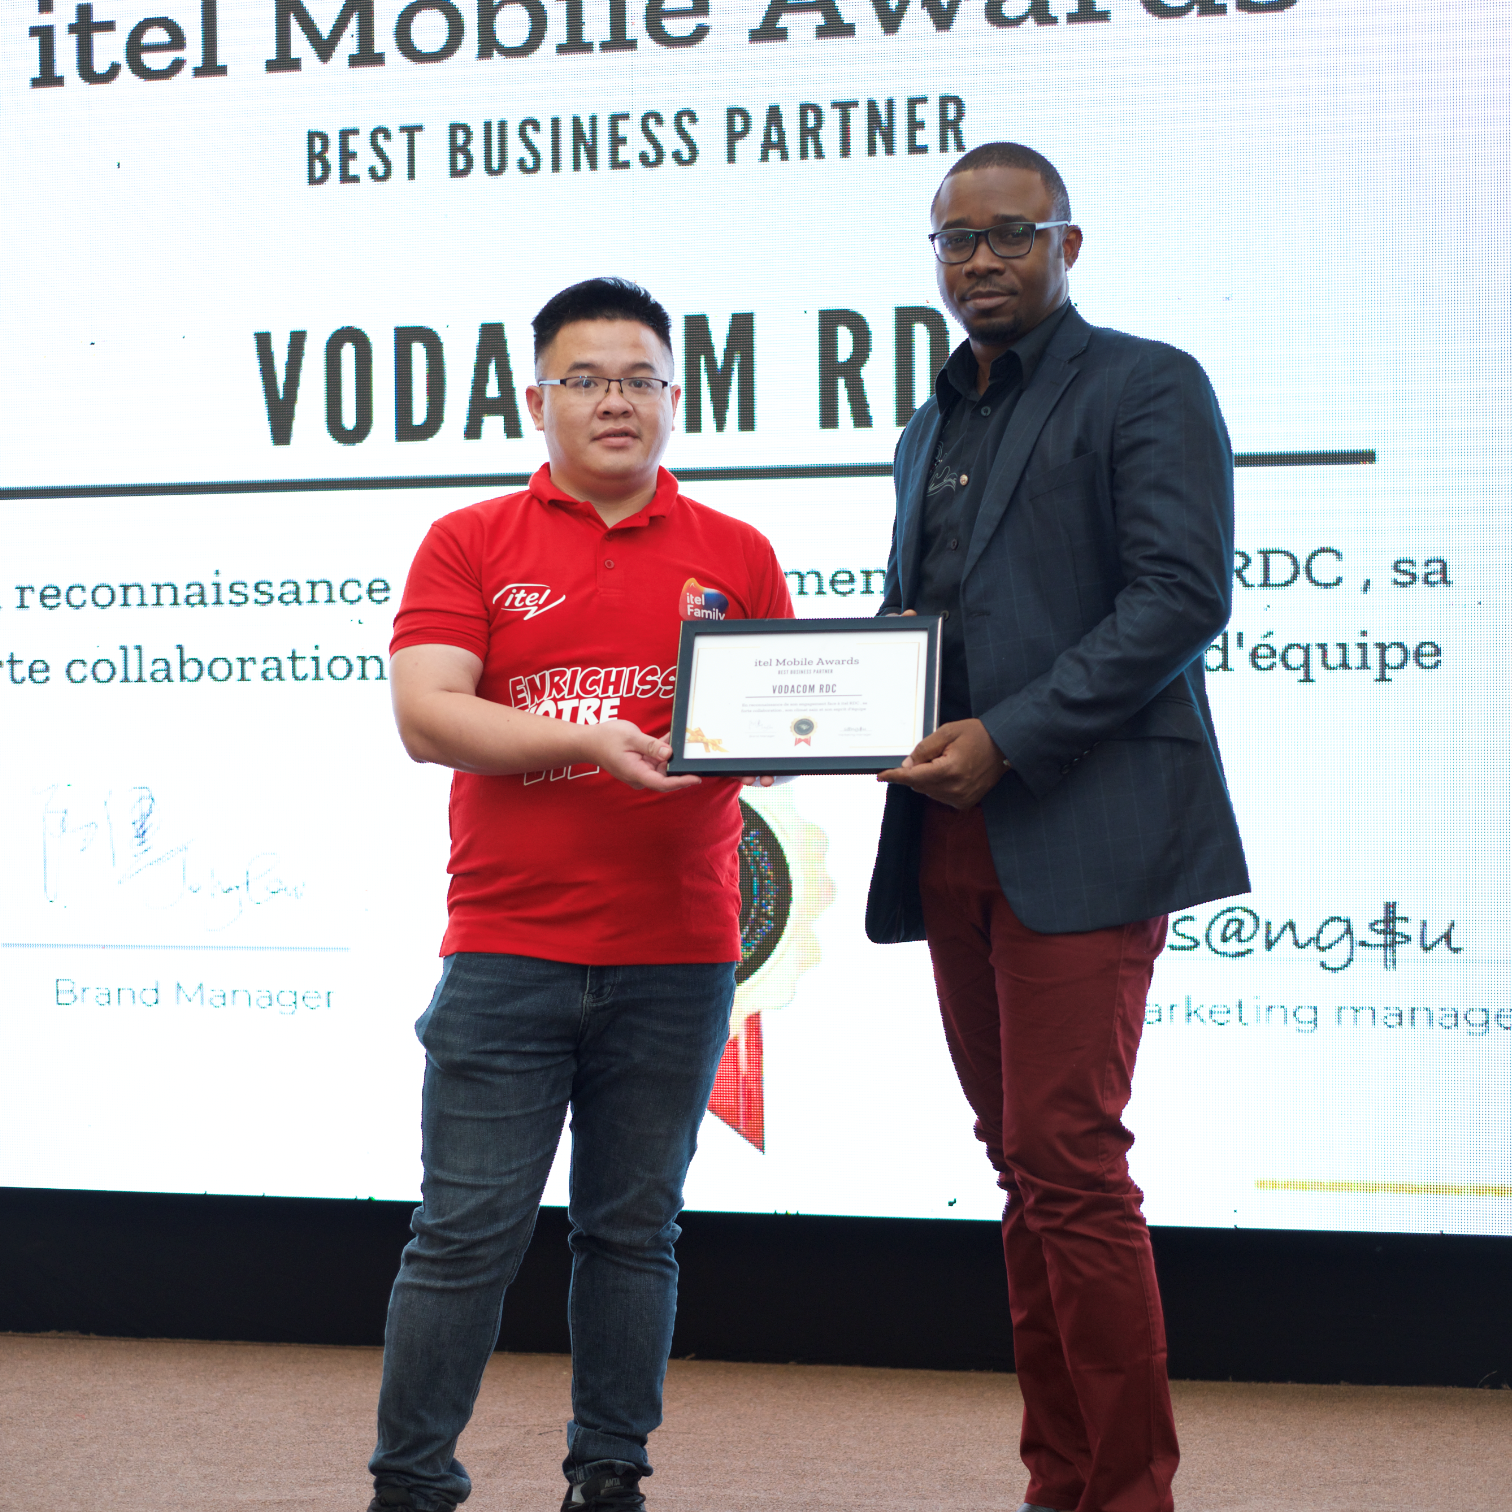 Effective Co-branding Partnerships Between itel and Vodacom in DRC